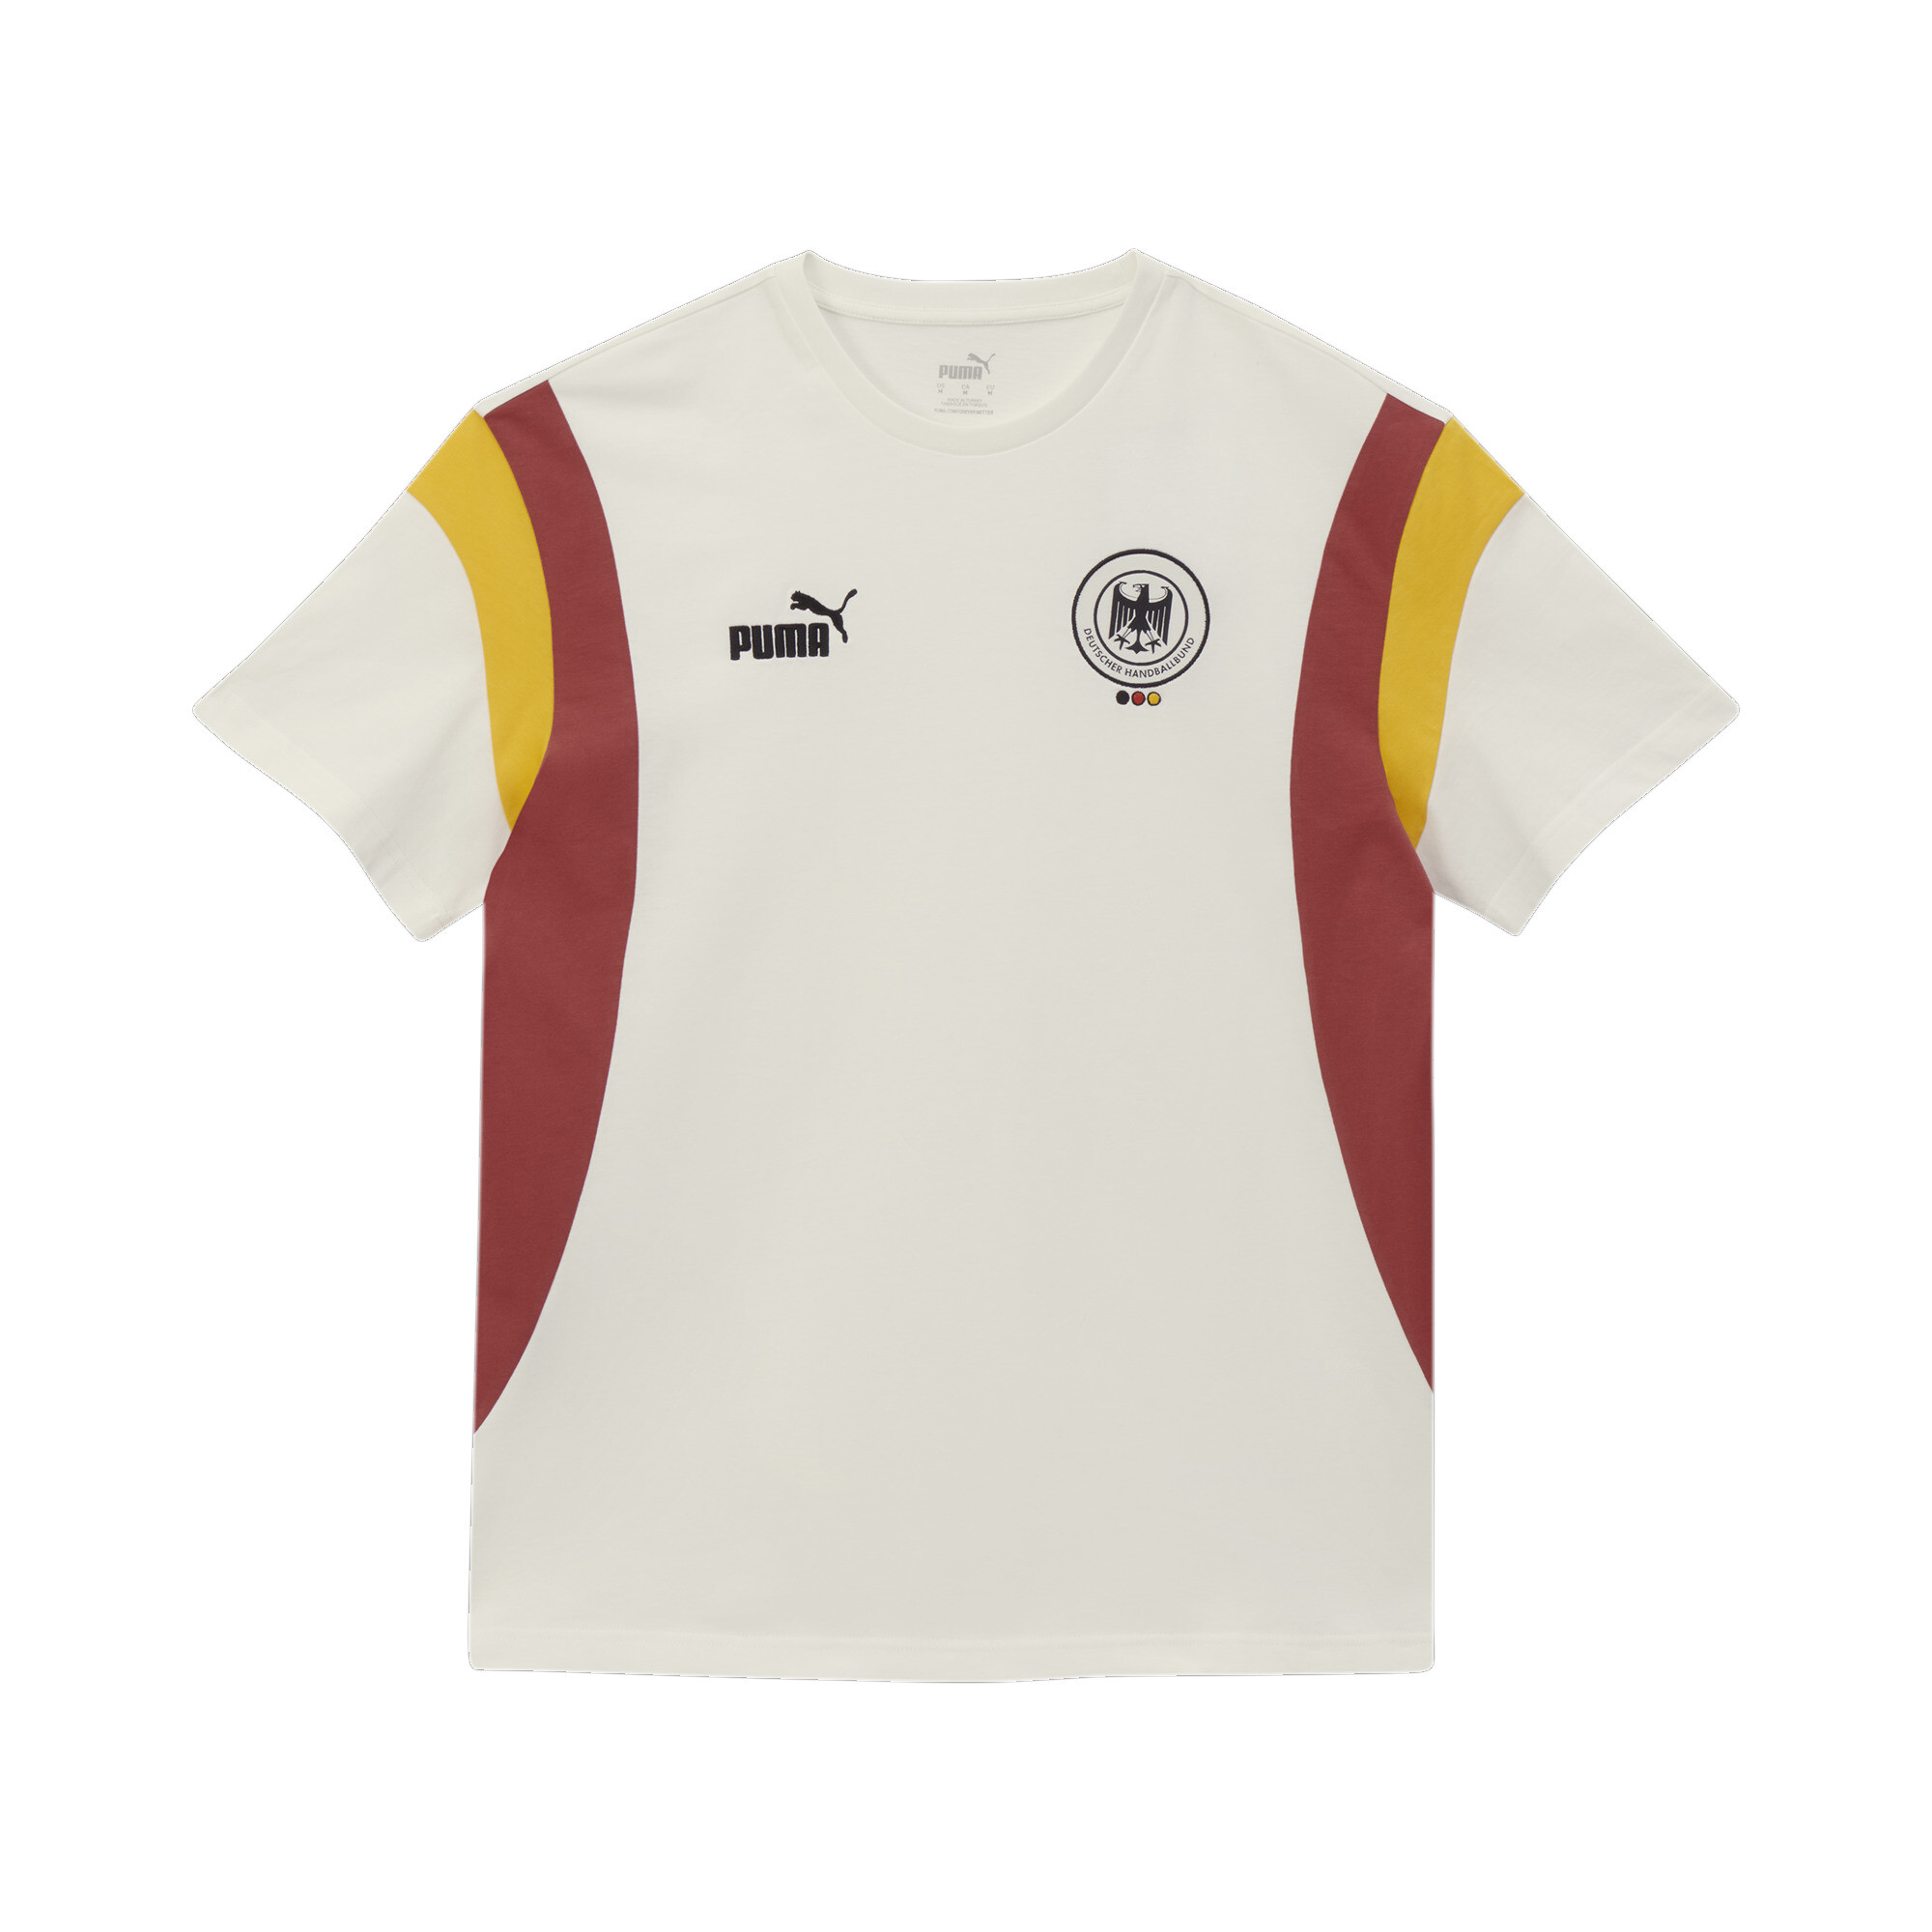 Men's Puma Deutscher Handball Bund Archive's T-Shirt, White, Size 3XL, German